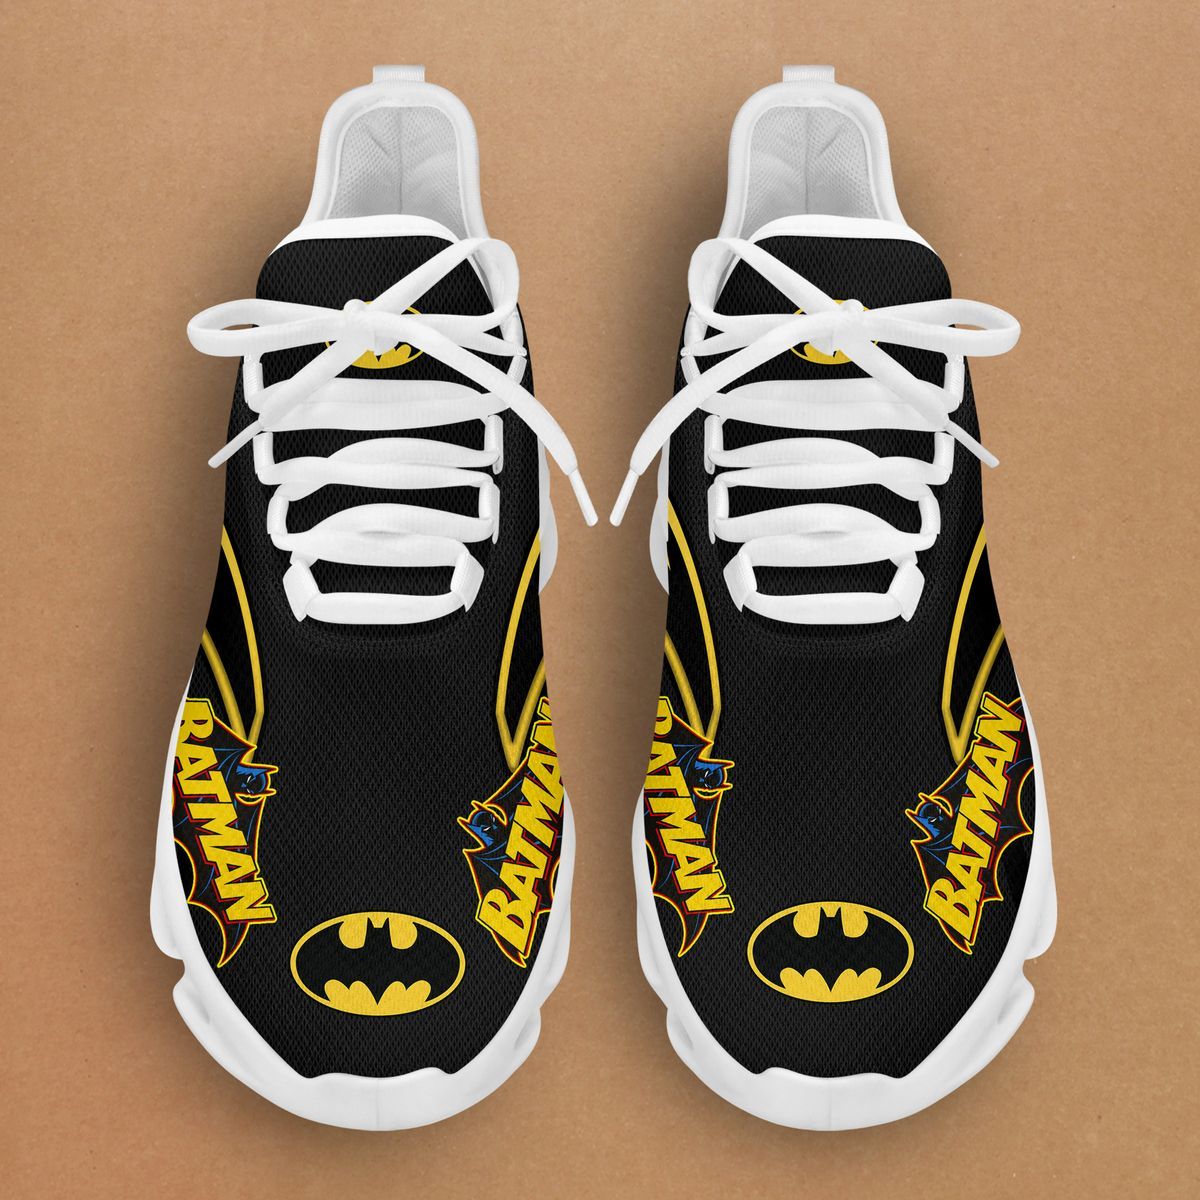 Batman Clunky Max soul shoes 7